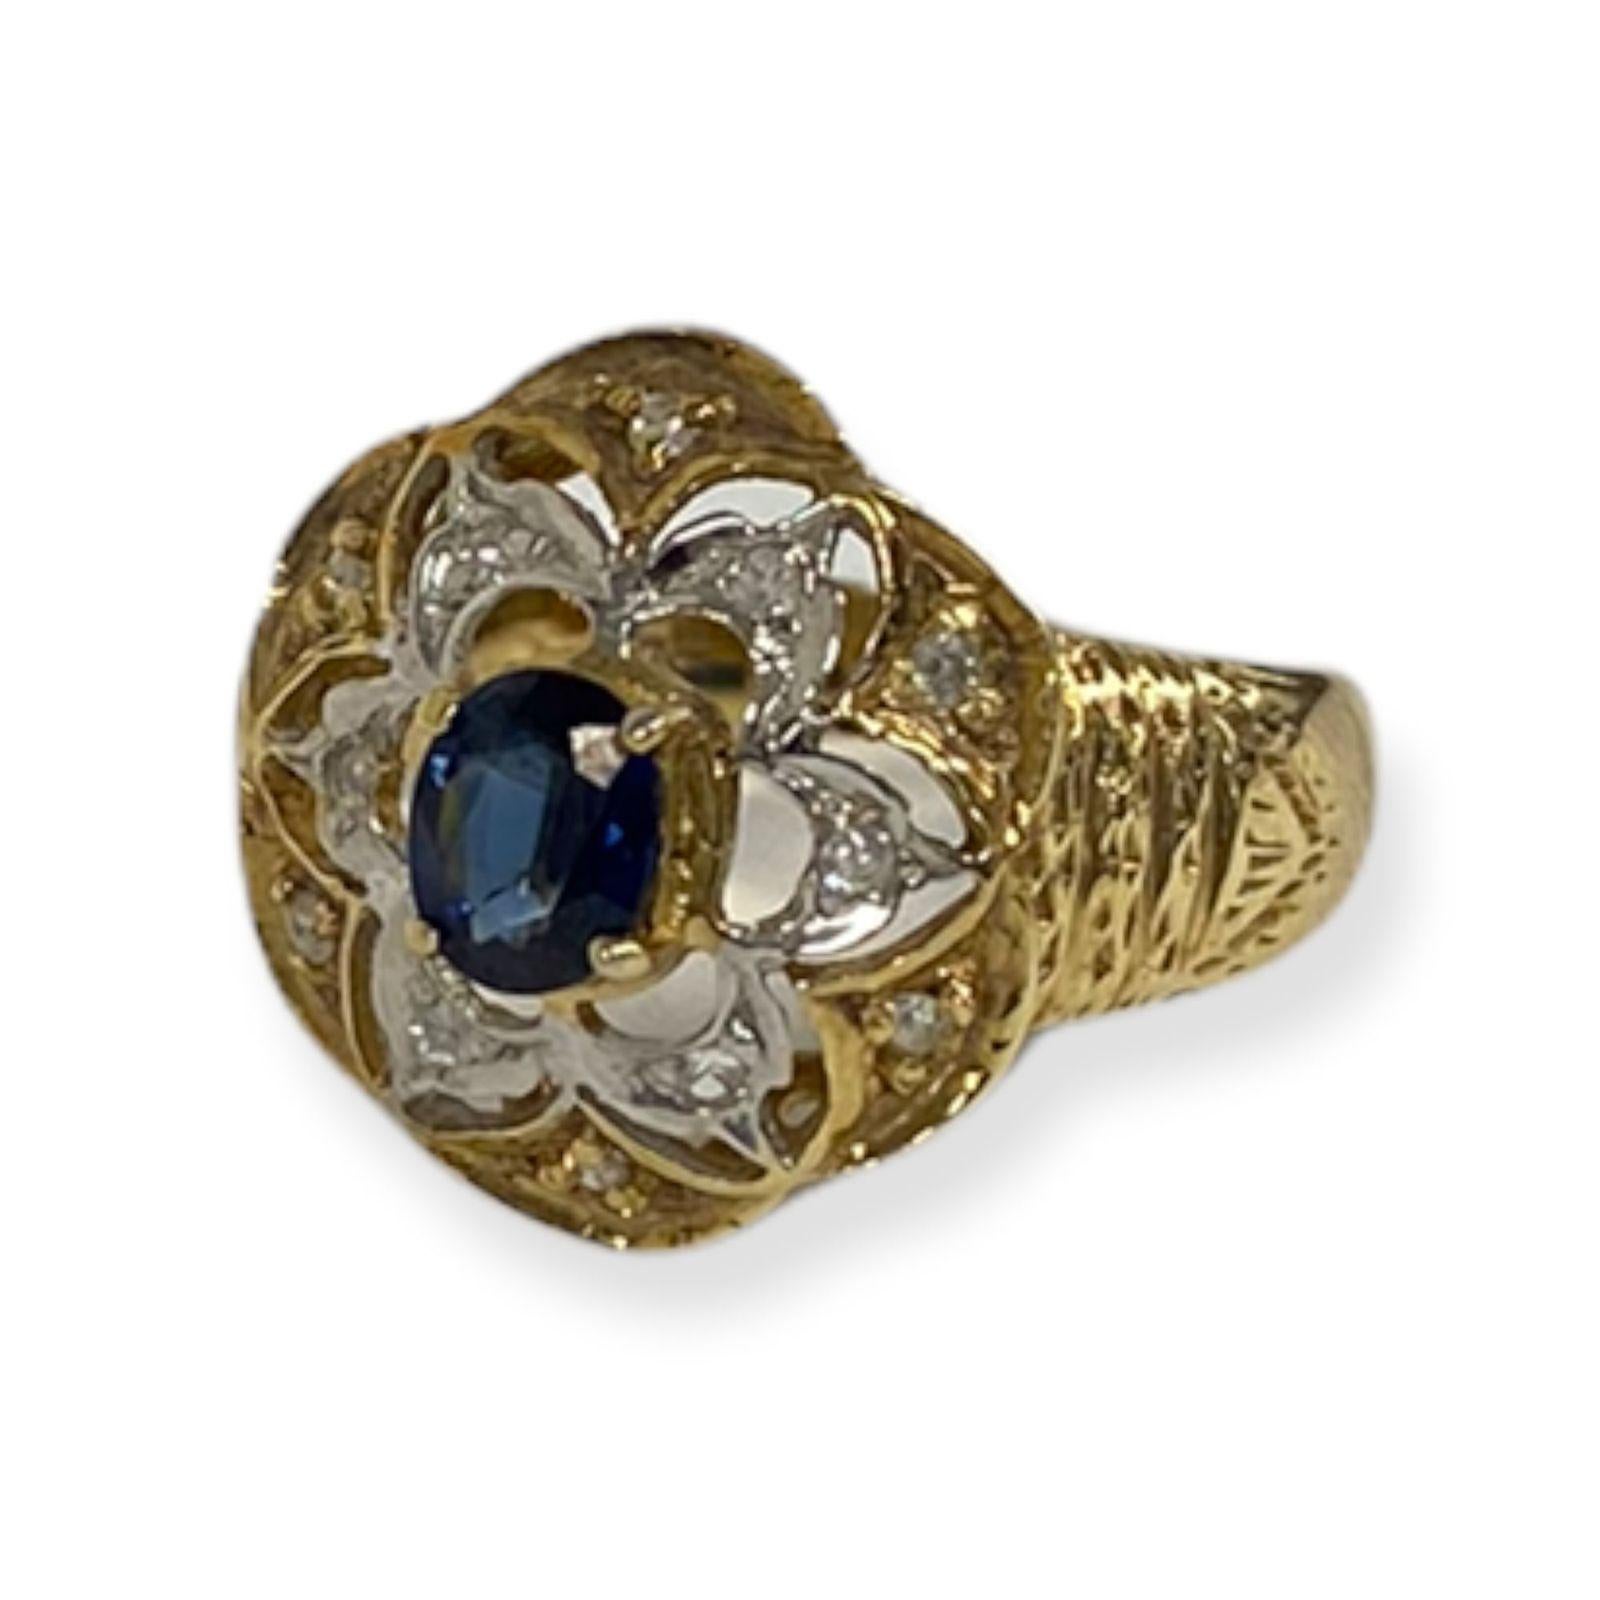 Cette bague spectaculaire de la collection Suzy L. Vintage-Inspired One-of-a-Kind présente un ensemble de diamants blancs (.10cttw) mettant en valeur un saphir bleu central de taille ovale (.25ct) dans une monture en or jaune 14k. Cette bague, dont